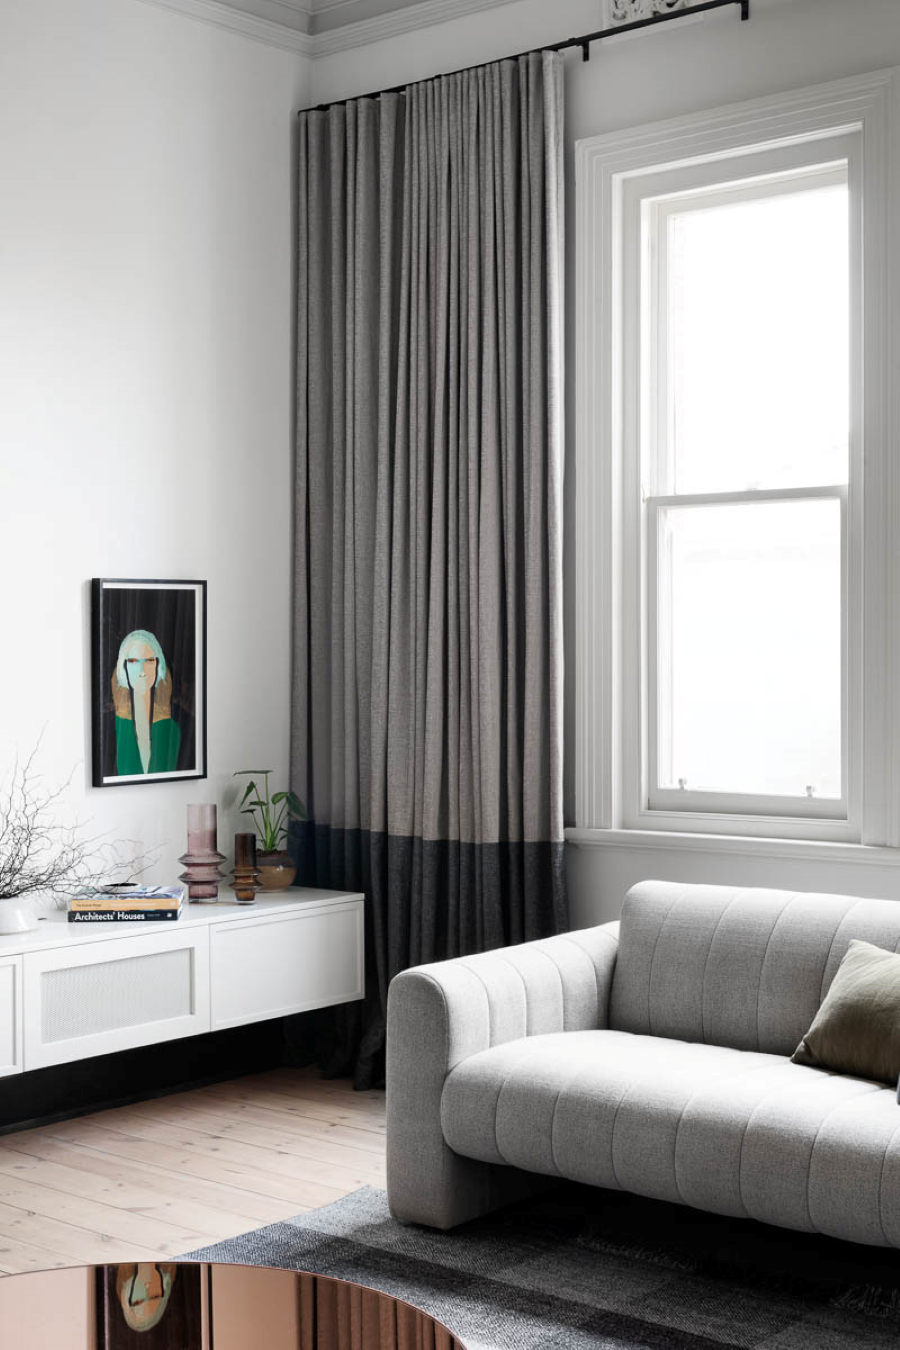 Living moderno con gran ventana con una cortina bicolor, gris claro y gris oscuro. Sillón gris de estilo contemporáneo. Junto al muro blanco hay un mueble bajo, blanco, con puertas. Sobre él hay adornos, libros y plantas. 